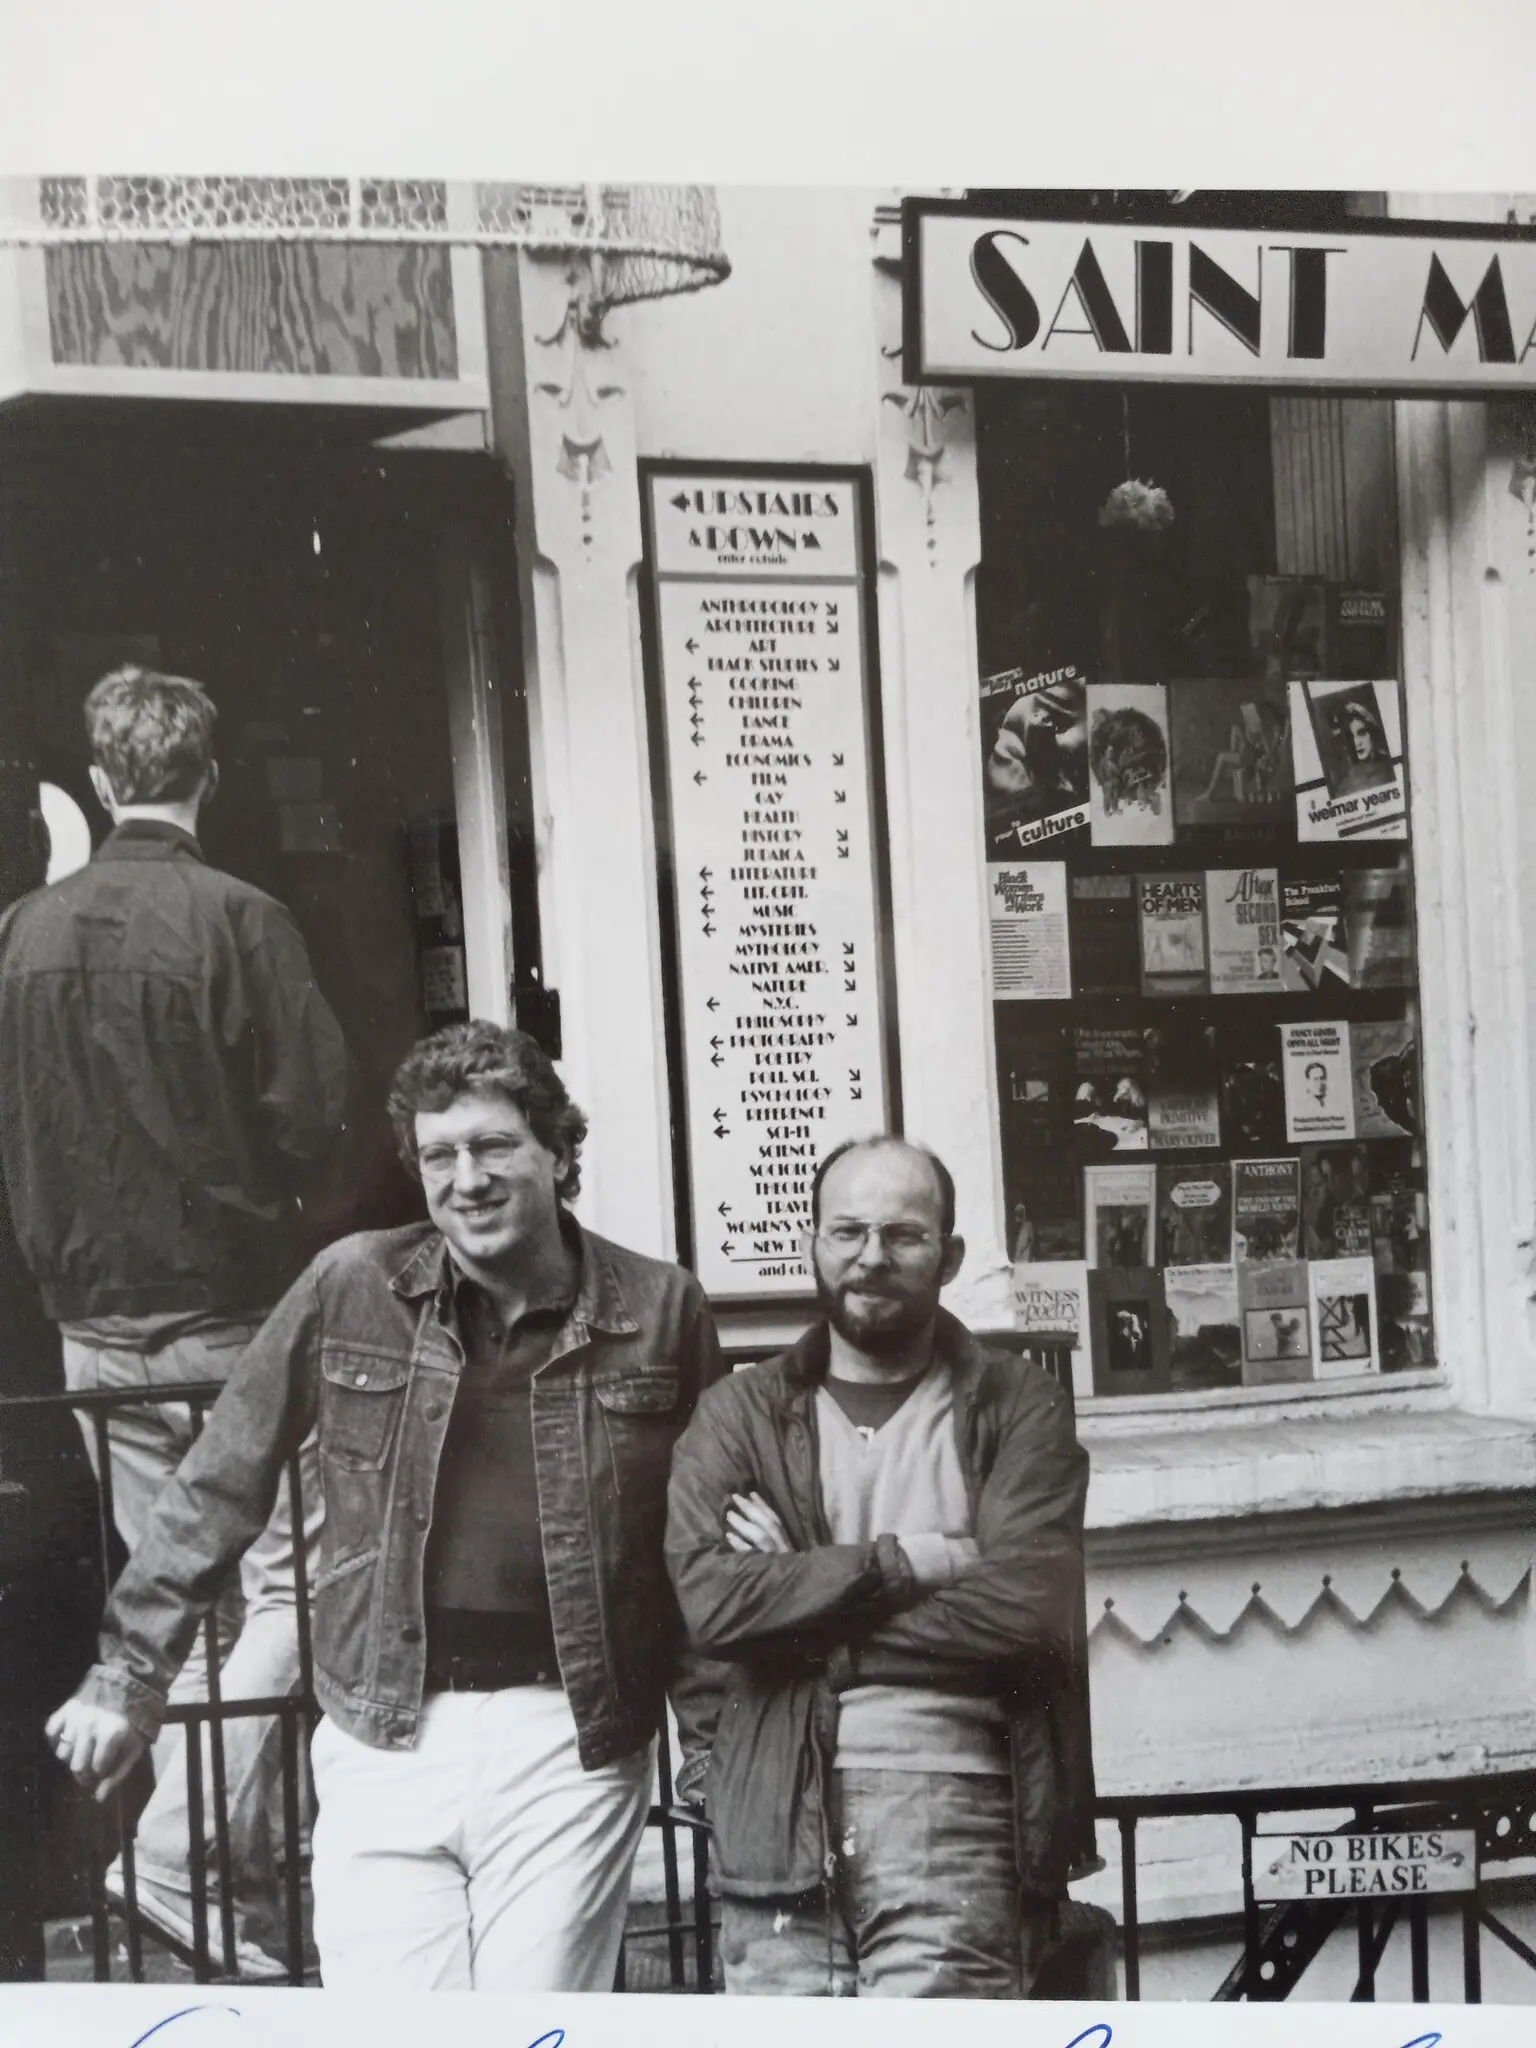 Bob Contant, à esquerda, com Peter Dargis, outro proprietário da Livraria São Marcos, no início dos anos 1980. (Como a placa indica, a palavra “Santo” às vezes estava escrita no nome da loja, às vezes não.) (Crédito da fotografia: por Marilyn Berkman)